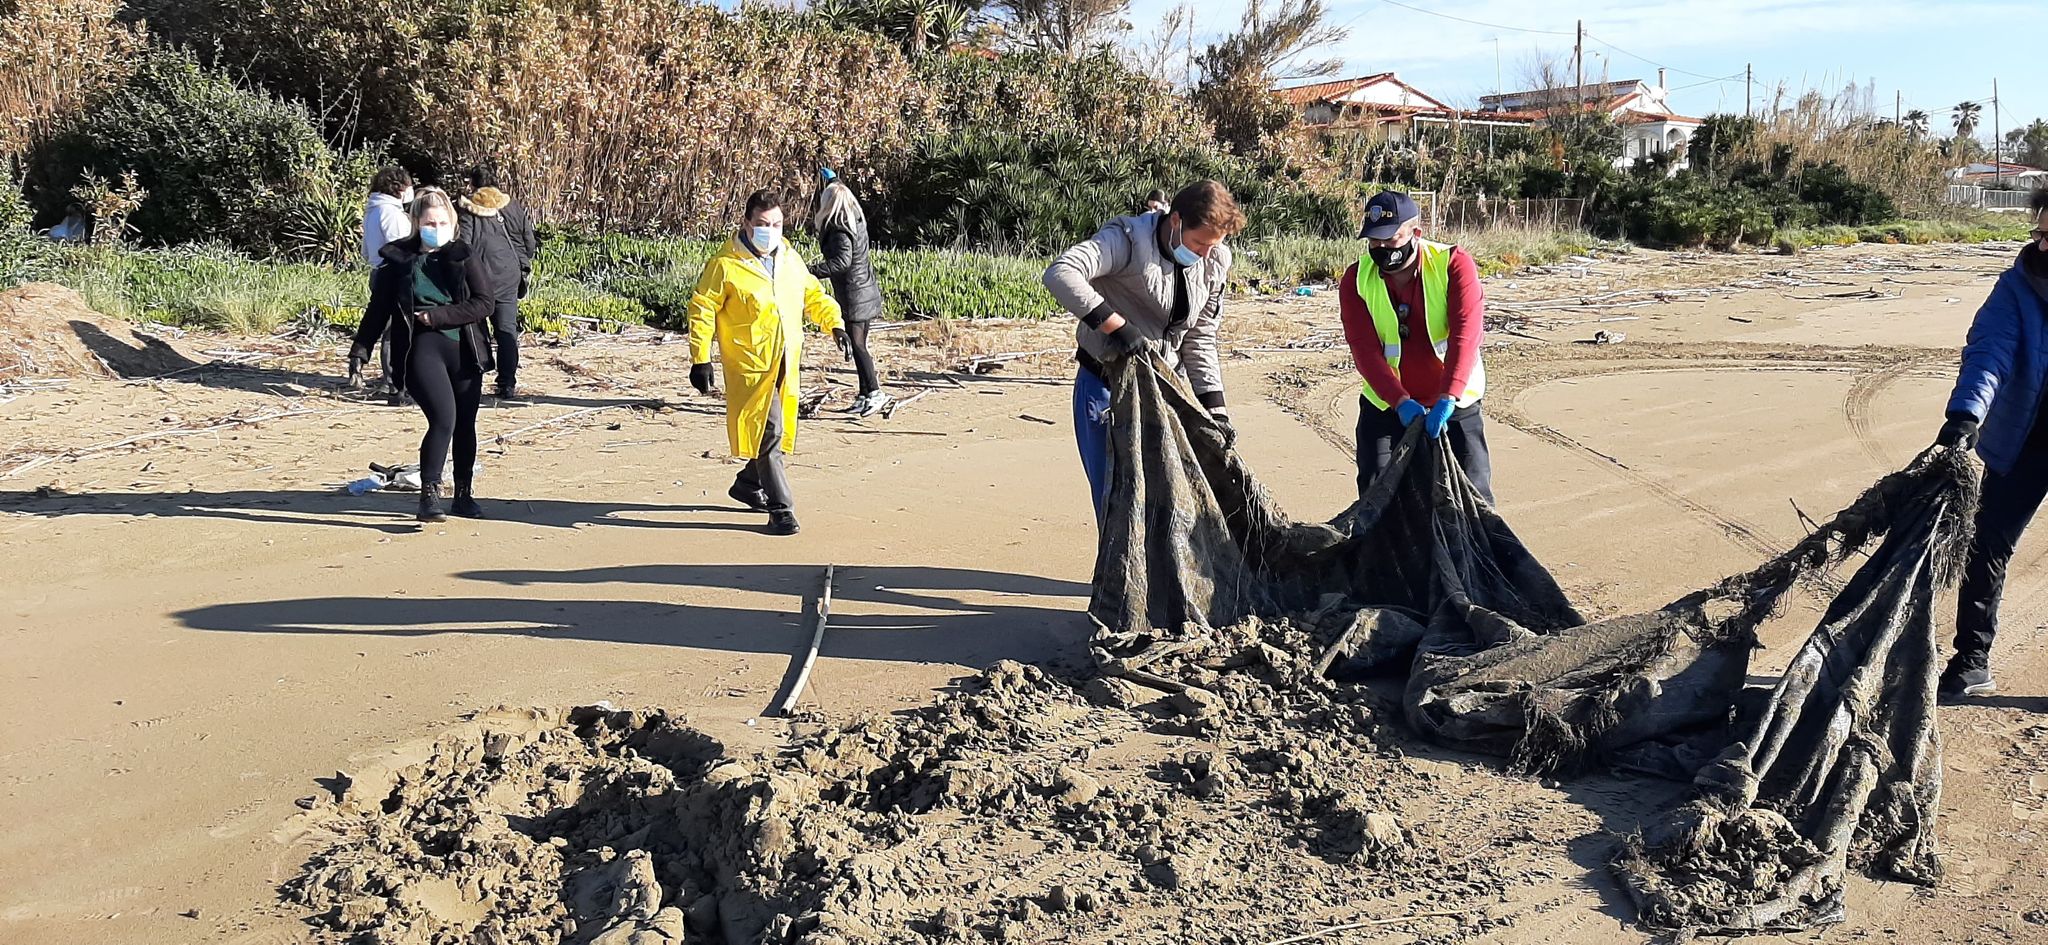 Δήμος Πύργου: Μικροί και μεγάλοι δημότες εθελοντές καθάρισαν από πλαστικά και άλλα φερτά υλικά την παραλία στο Κατάκολο - Συγκεντρώθηκαν πάνω από 150 σακούλες με πλαστικά απορρίμματα (photos)